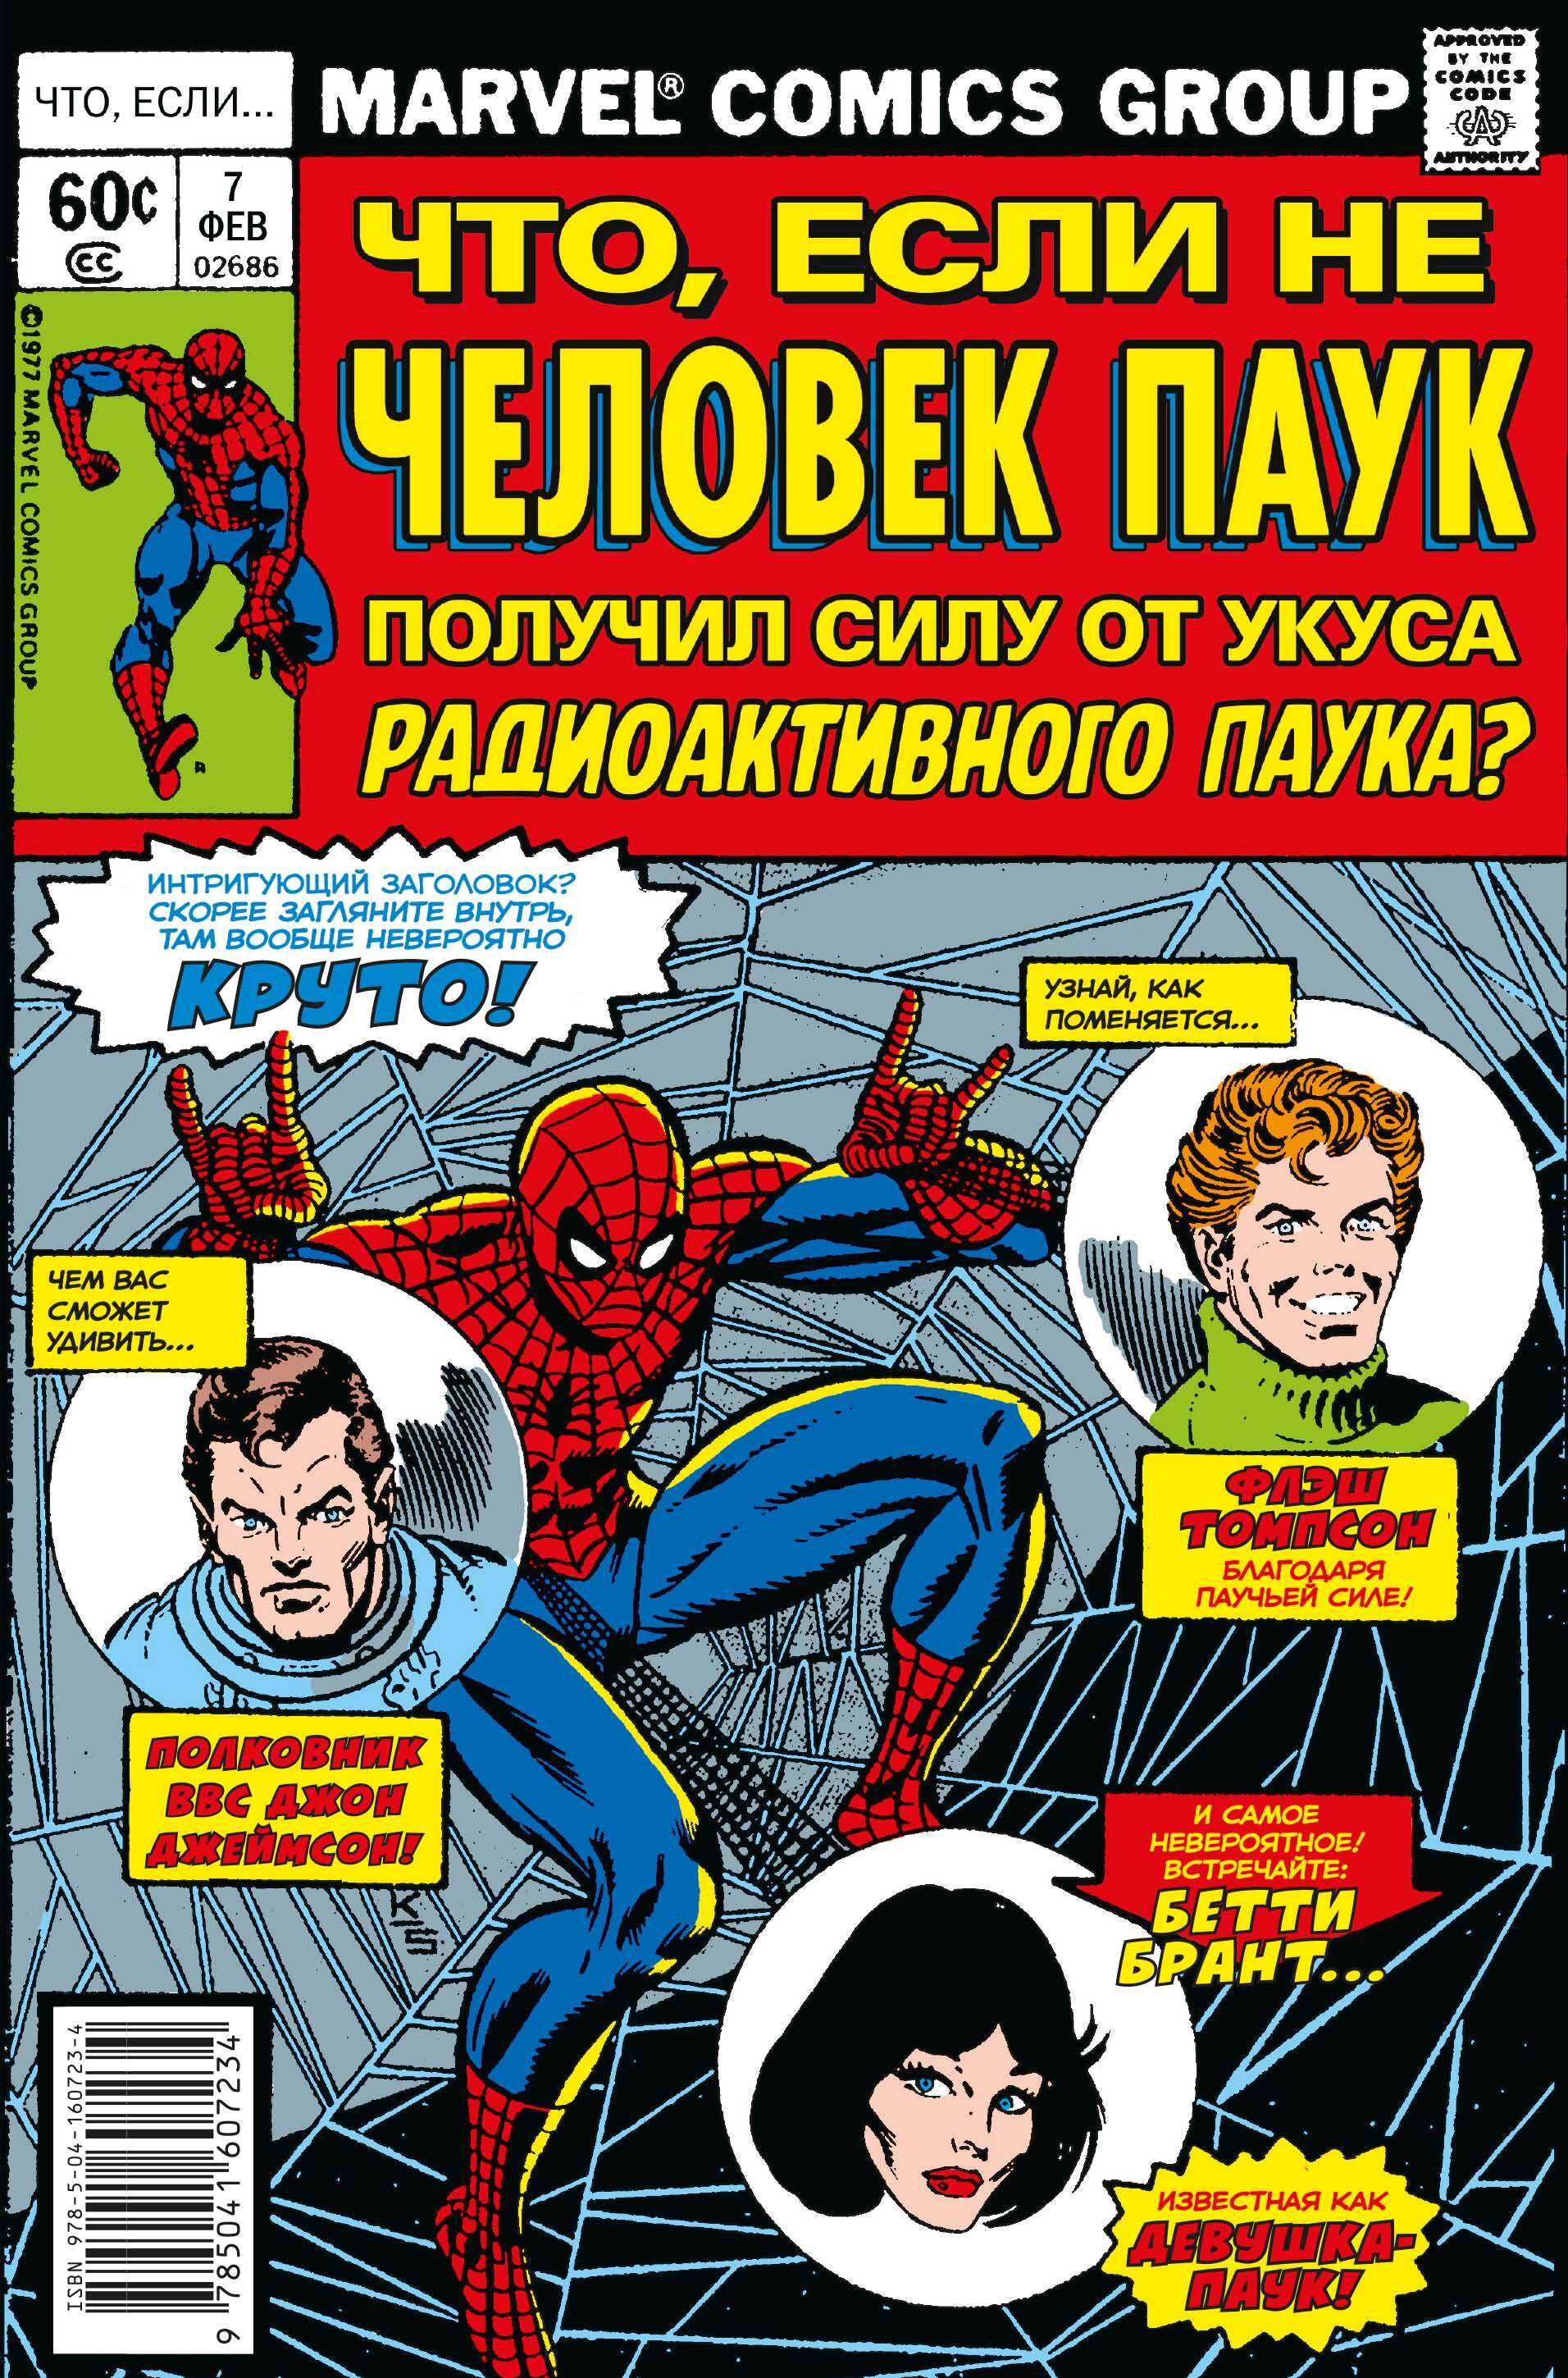 Глат Дон MARVEL: Что если?.. Не Человек-Паук получил силу от укуса радиоактивного паука